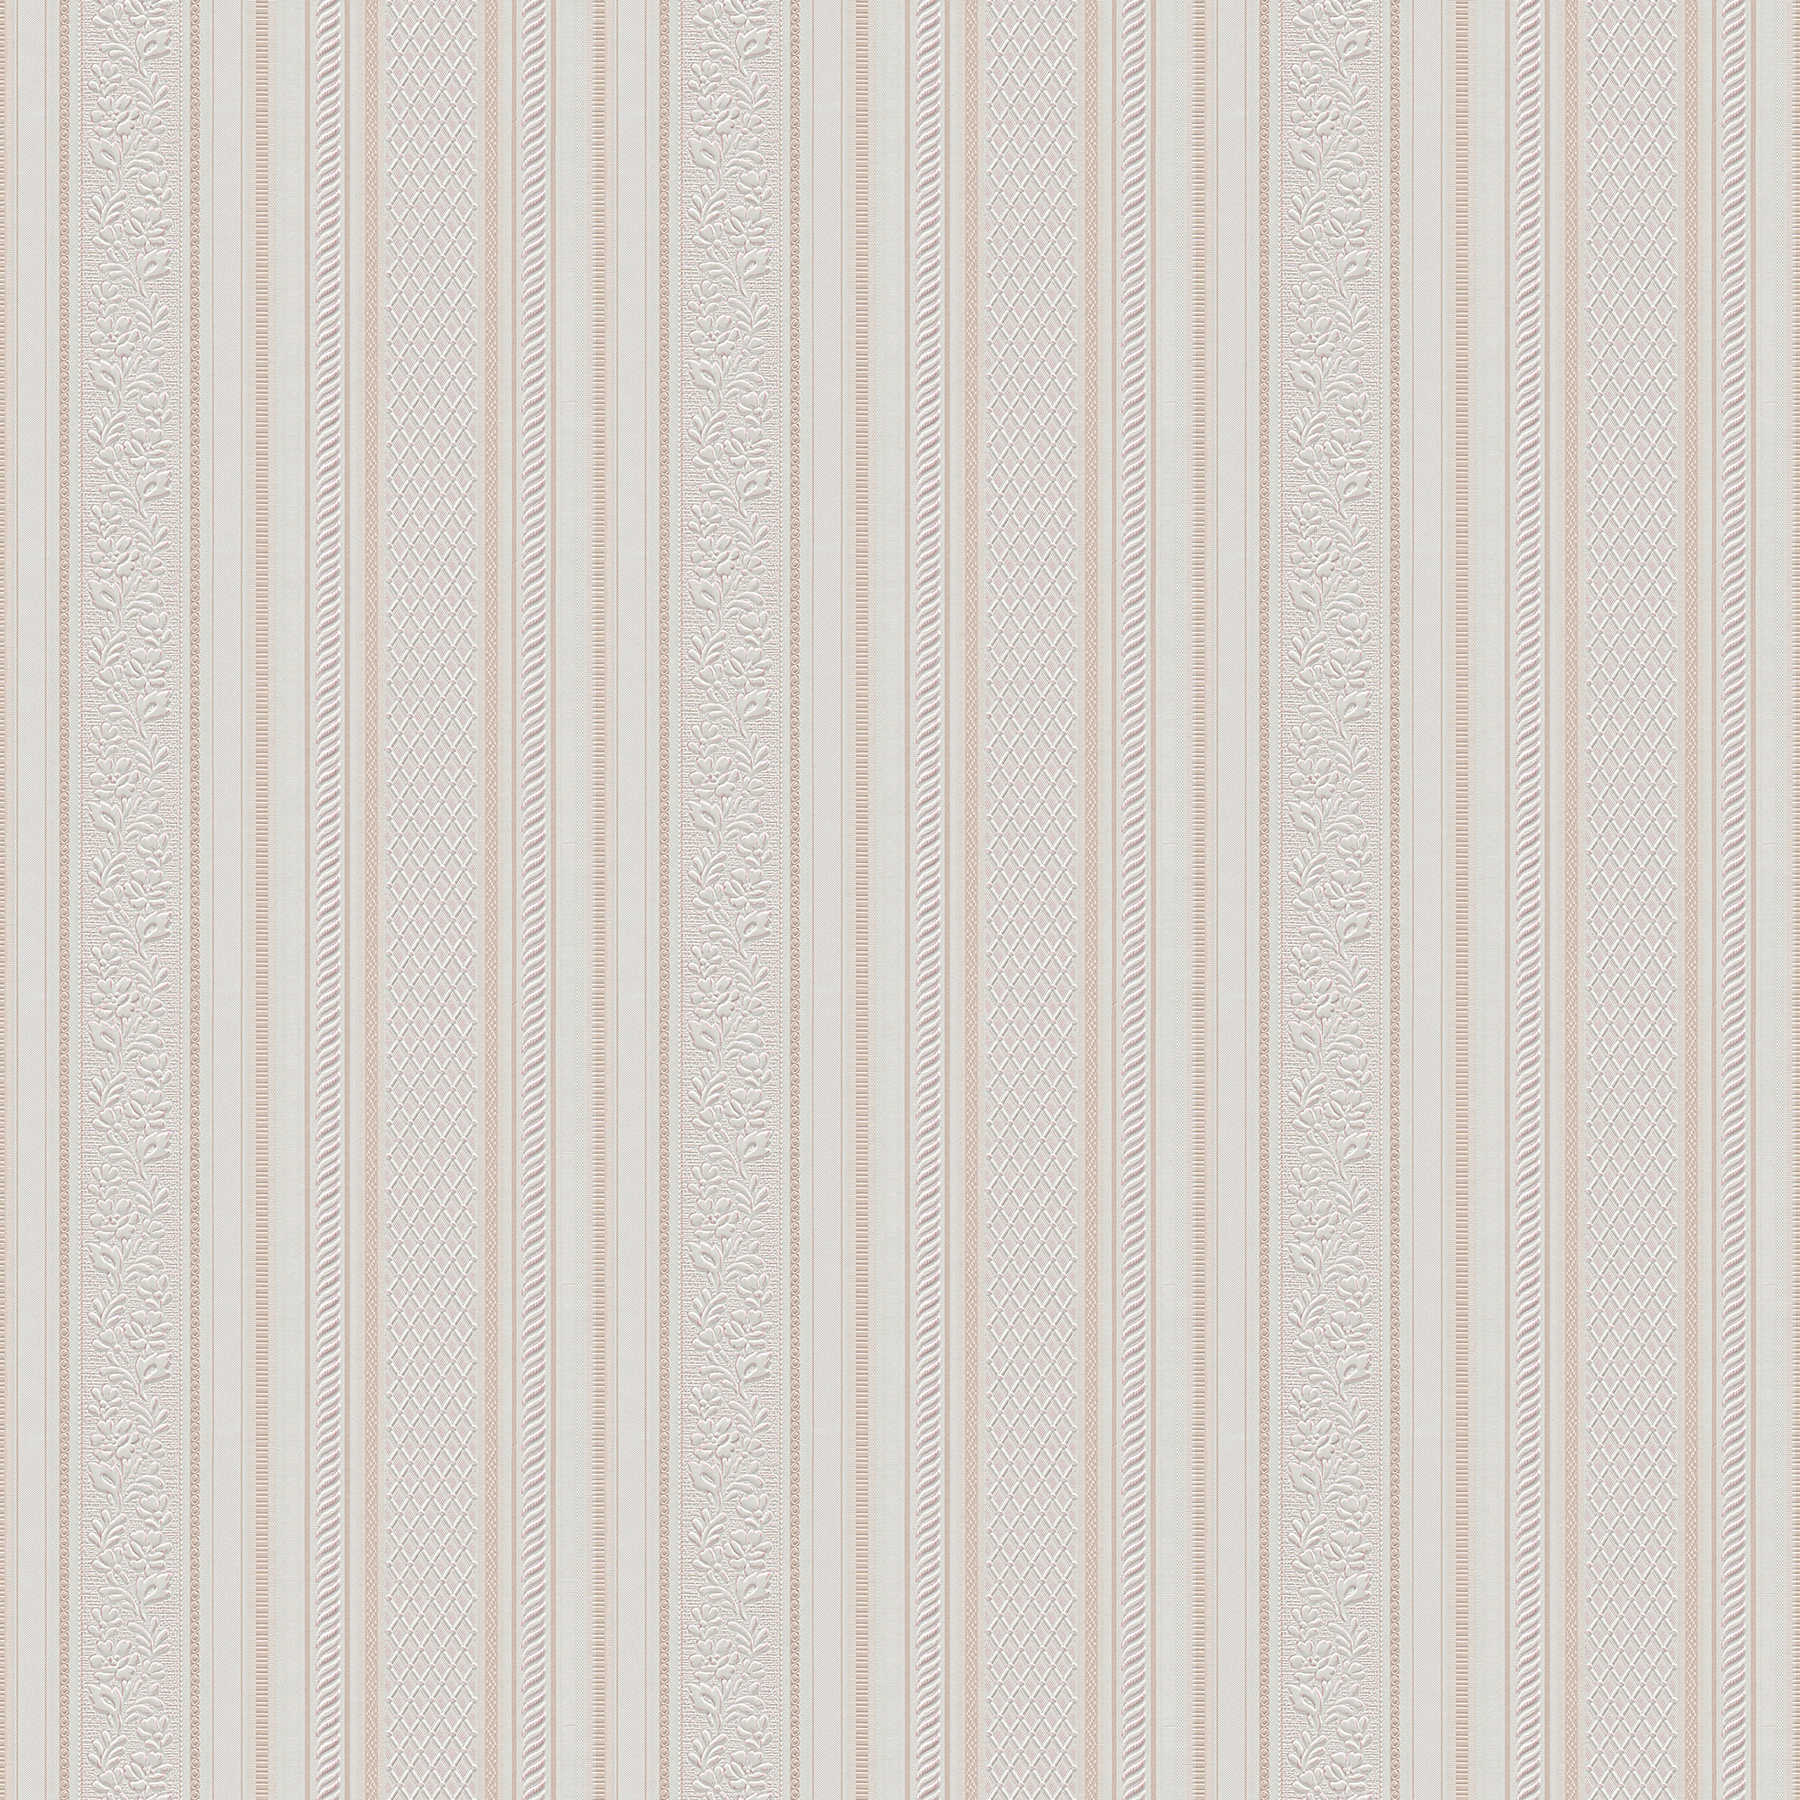 Papier peint à rayures avec ornements design style Biedermeier - beige, crème, blanc
